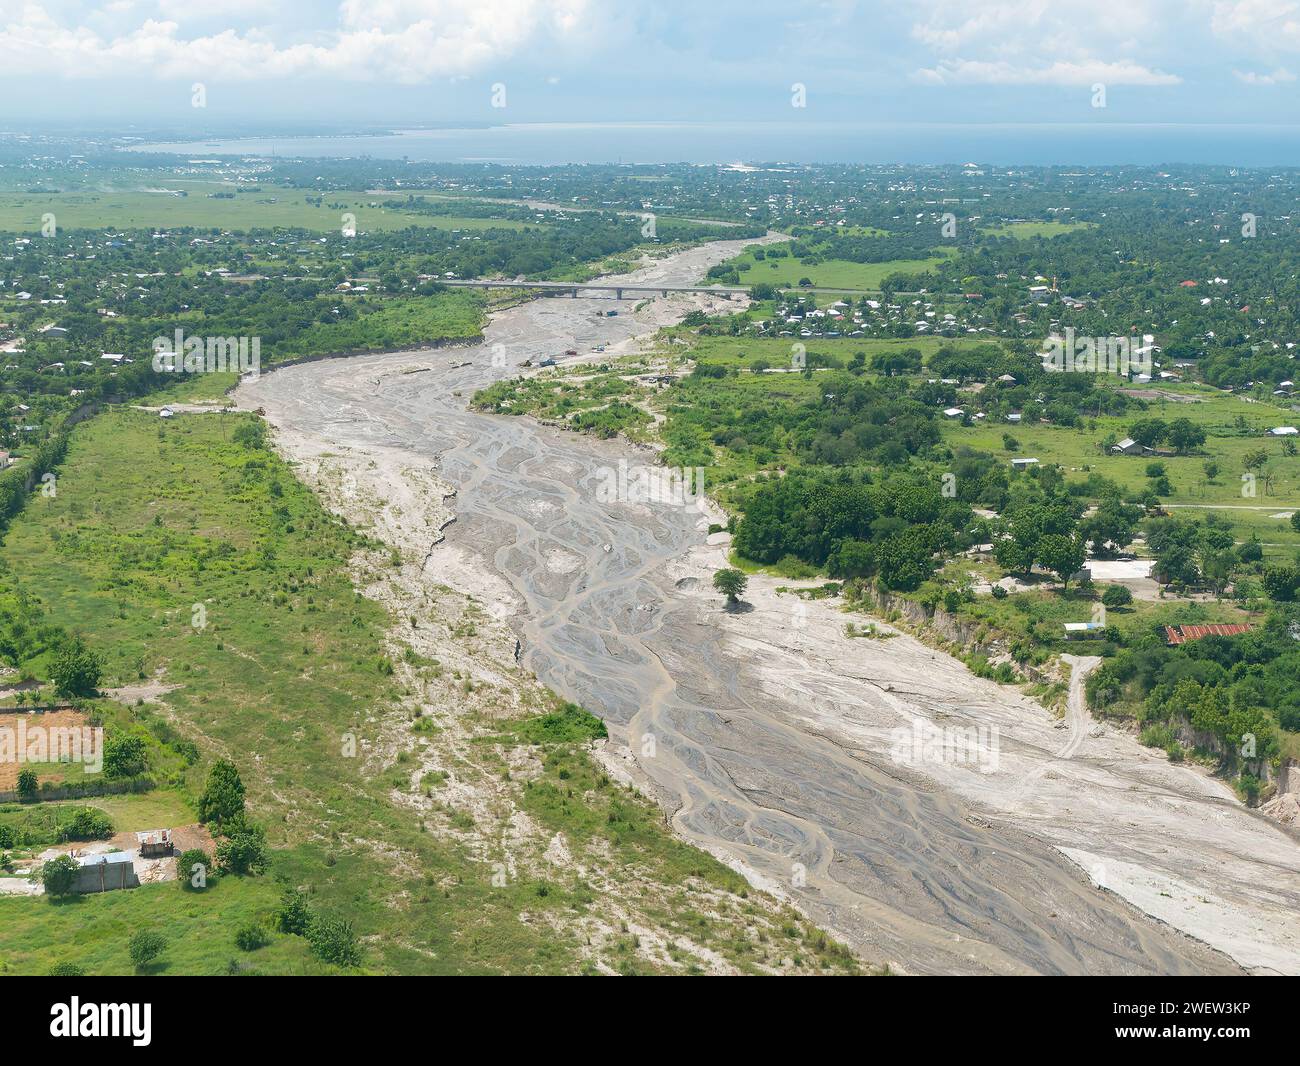 Das ausgetrocknete Flussbett des Makar River in der Nähe von General Santos City, South Cotabato Provinz, Soccsksargen Region, Mindanao, Philippinen. Stockfoto